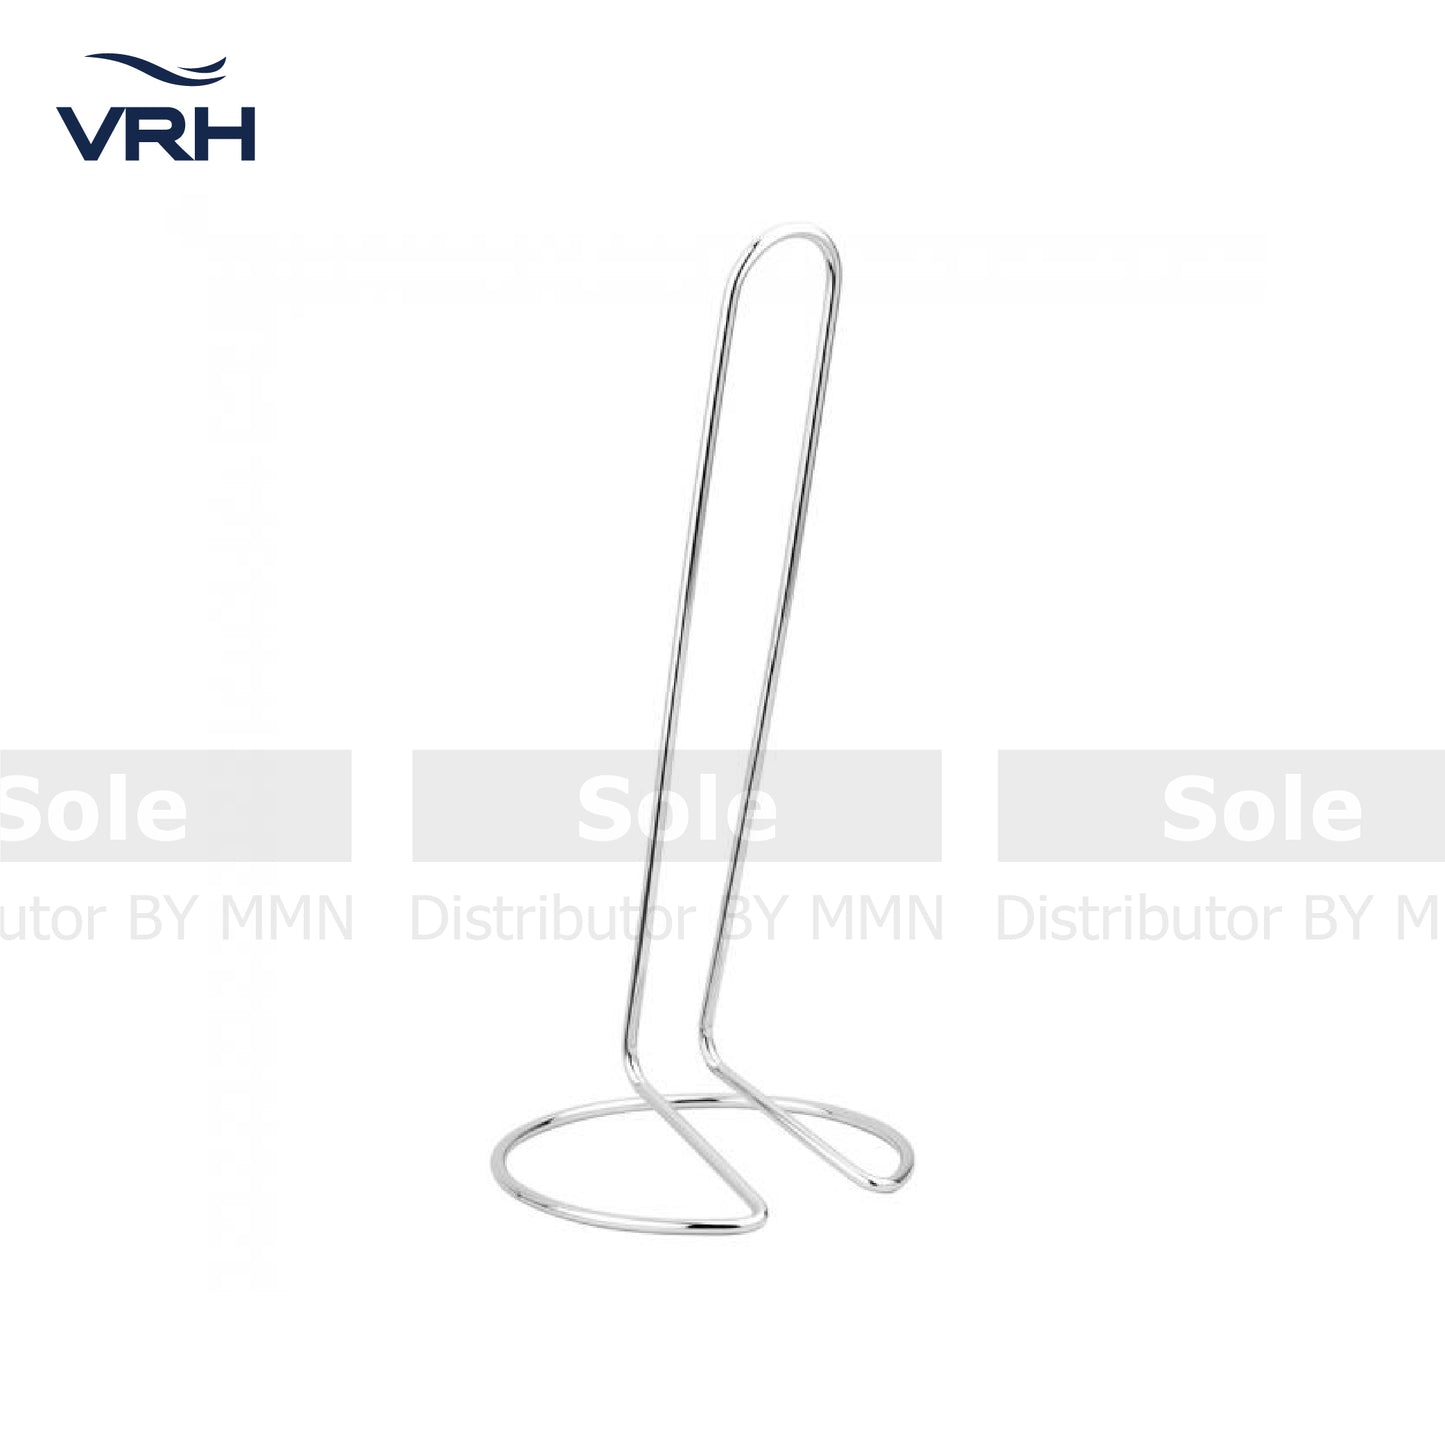 VRH Tissue Holder Stand, Size H310x Base 130mm, Stainless Steel - FWMNW-A104GK (HW104-W104G)